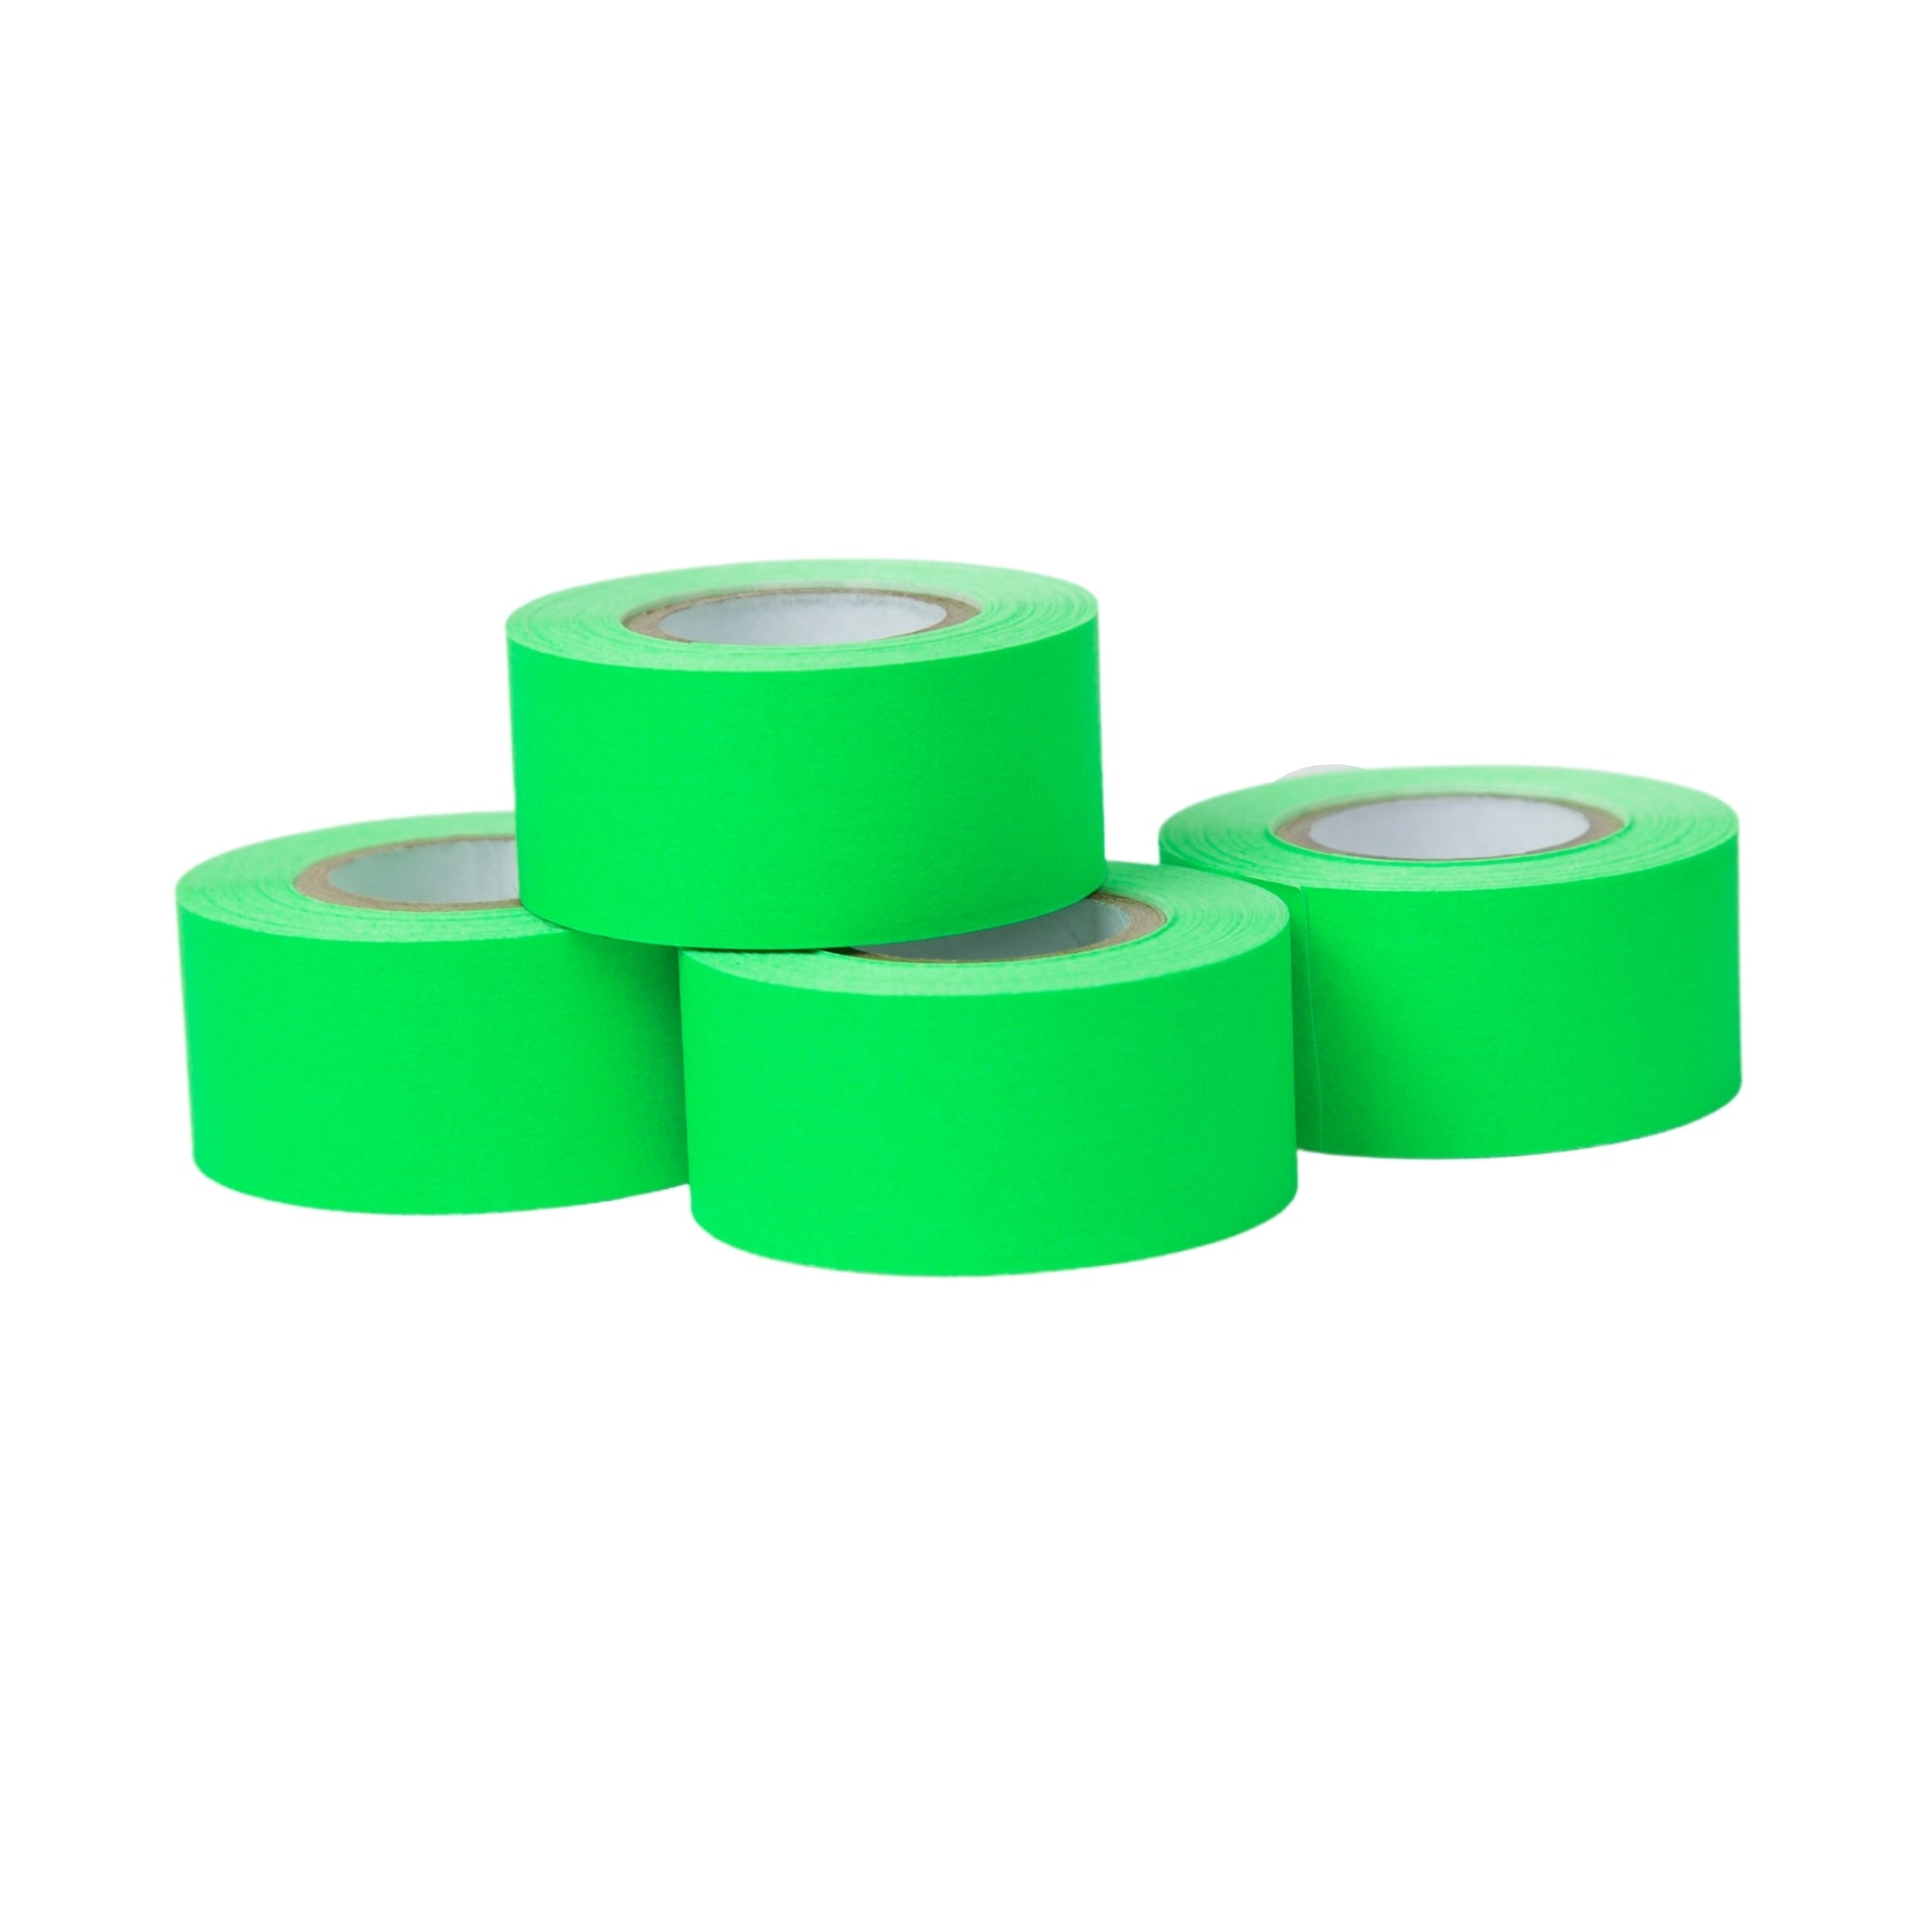 1" x 360" Artist Tape - 4 Pack Fluorescent Green